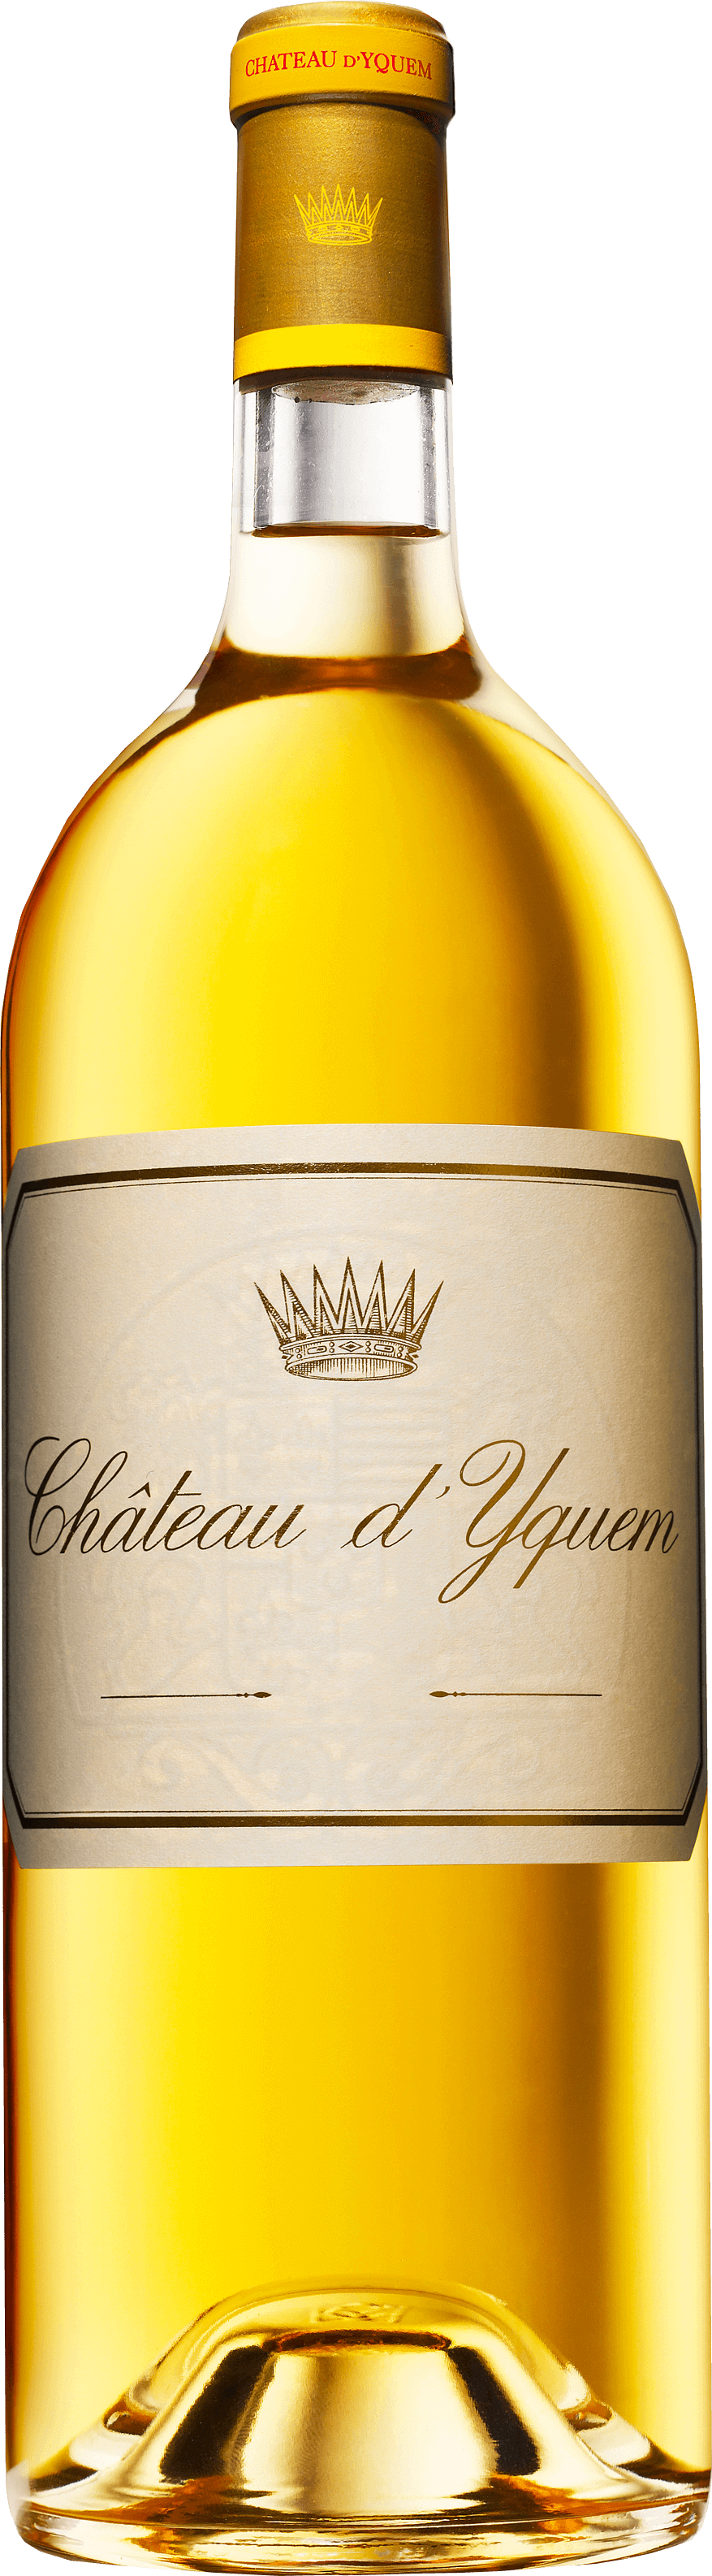 Yquem 2003 1er Cru Suprieur Sauternes, Bordeaux blanc